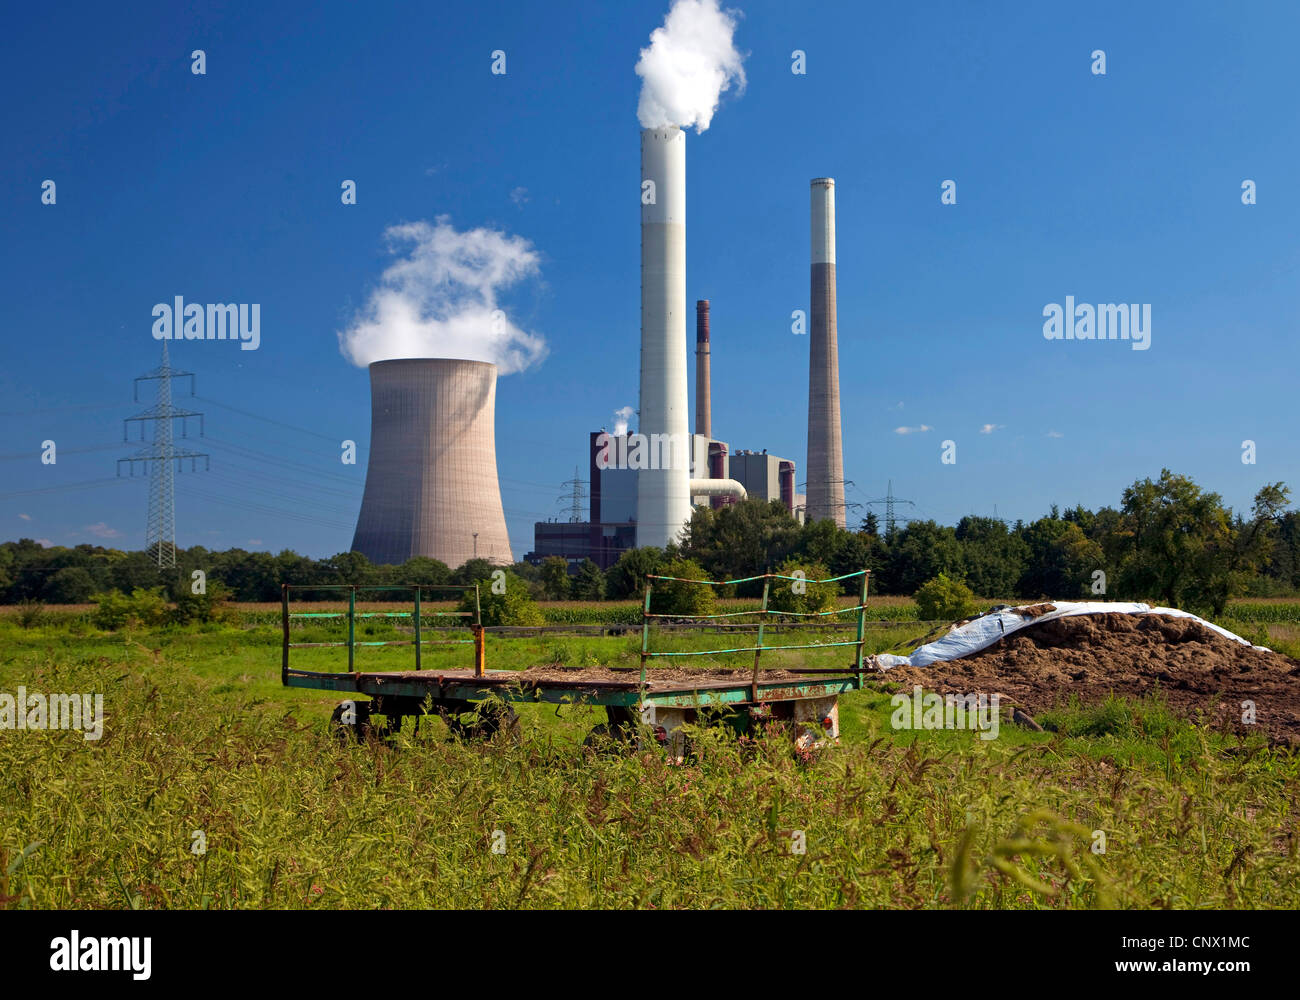 Veicolo agricolo in un pascolo con le centrali a carbone Voerde, in Germania, in Renania settentrionale-Vestfalia, la zona della Ruhr, Voerde Foto Stock